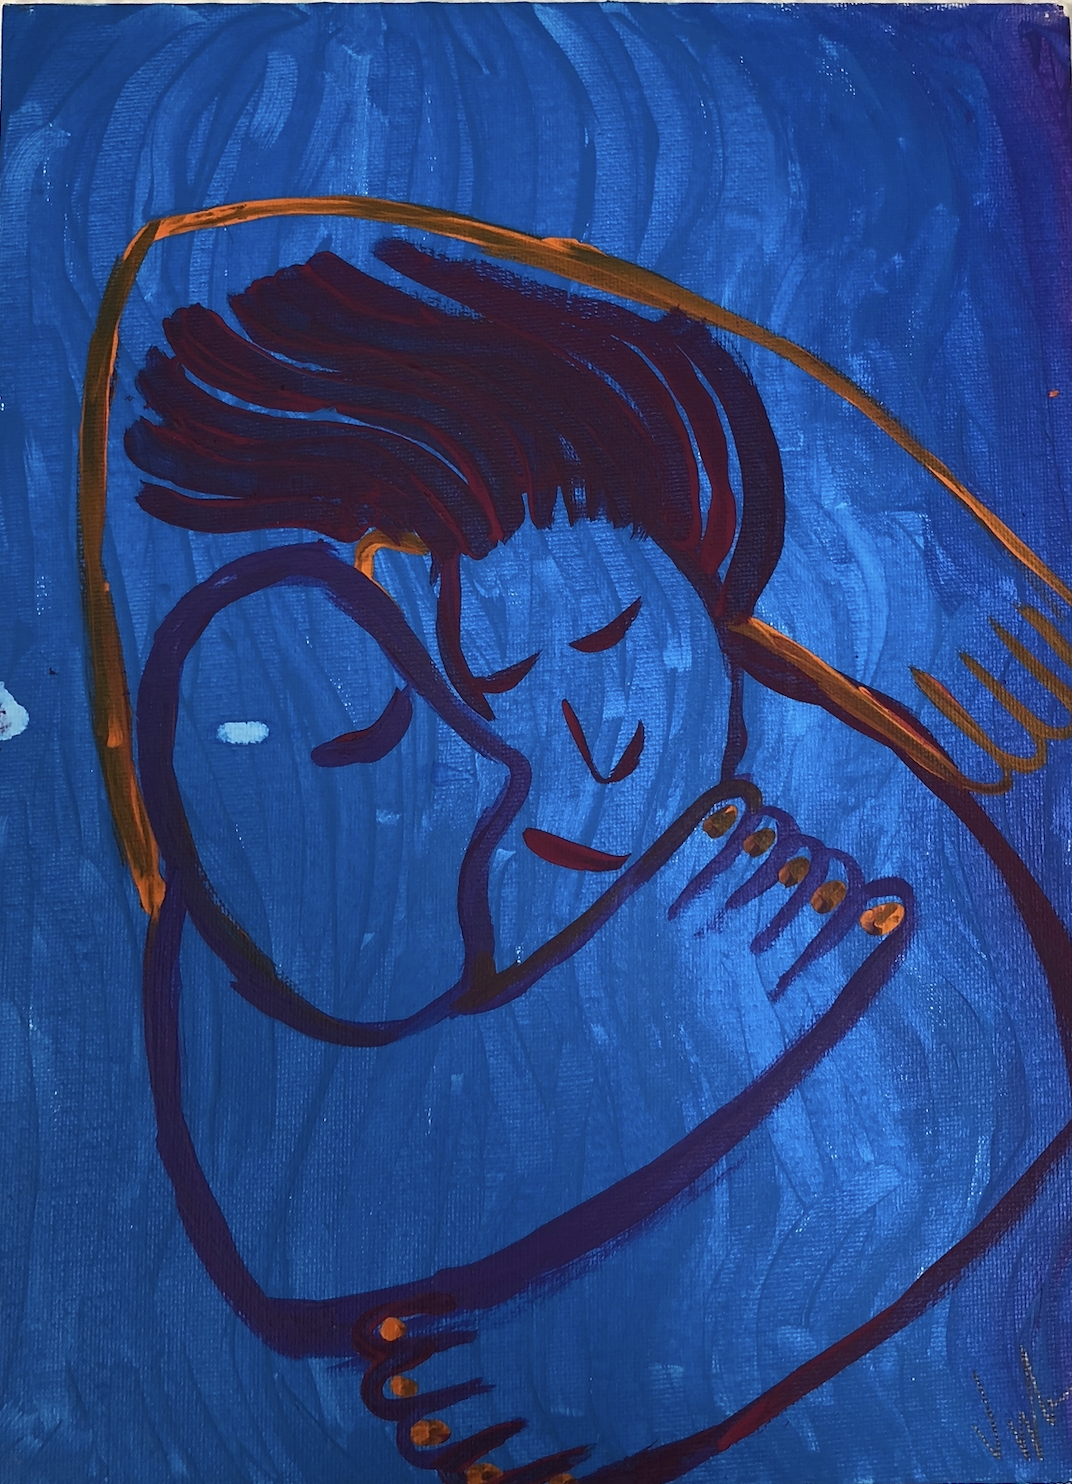 Blue Image of Two Figures Embracing - Victoria de Alba, Ciudad Juárez y El Paso (21 years old)